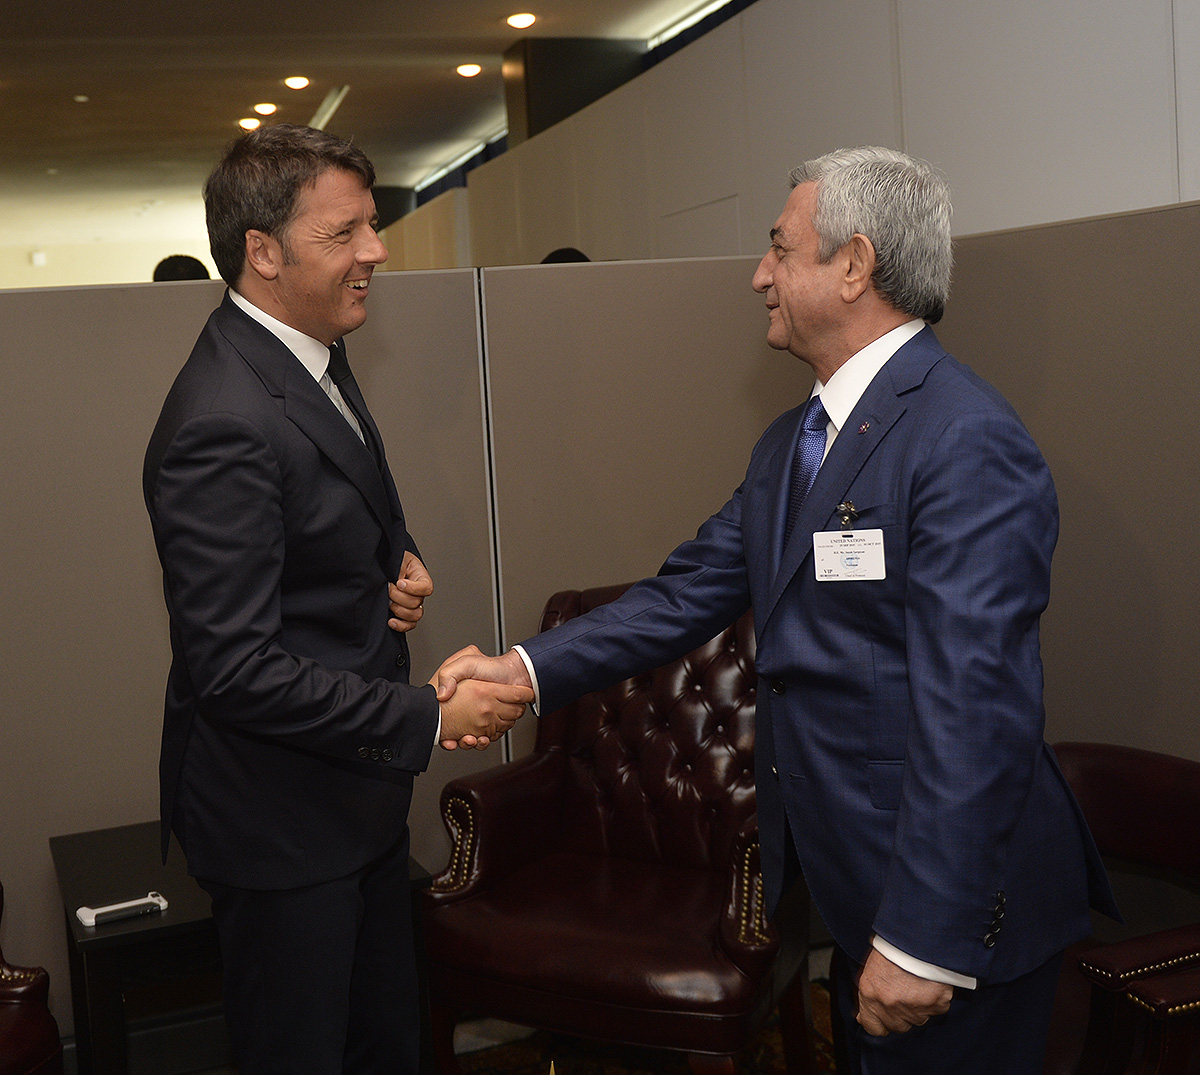 Սերժ Սարգսյանը Նյու Յորքում հանդիպում է ունեցել Իտալիայի եւ Շվեդիայի վարչապետների հետ